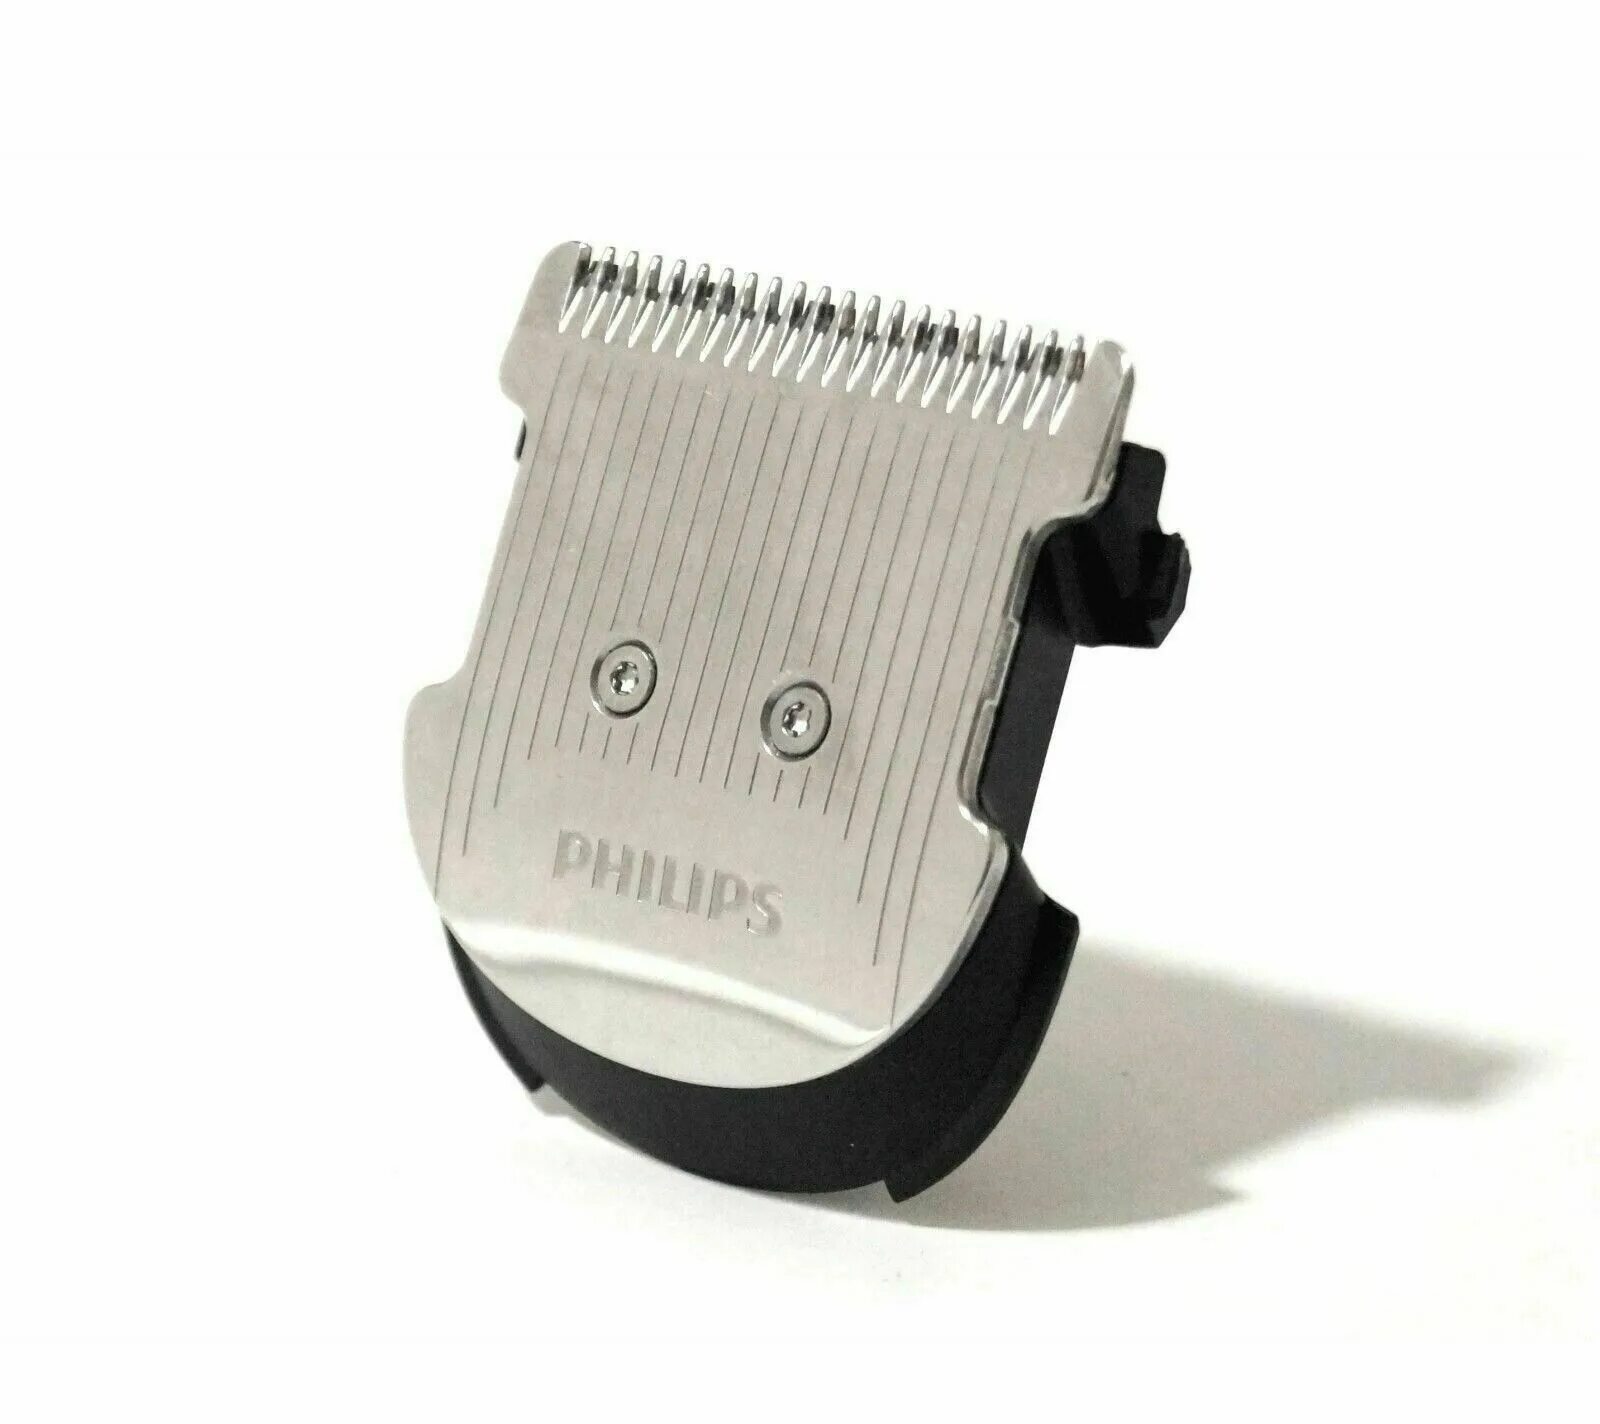 Ножи для машинки филипс. Ножевой блок для Philips hc5440. Ножевой блок для машинки Philips c241. Ножевой блок для машинки Philips HC 5612. Филипс 3400 машинка для стрижки.